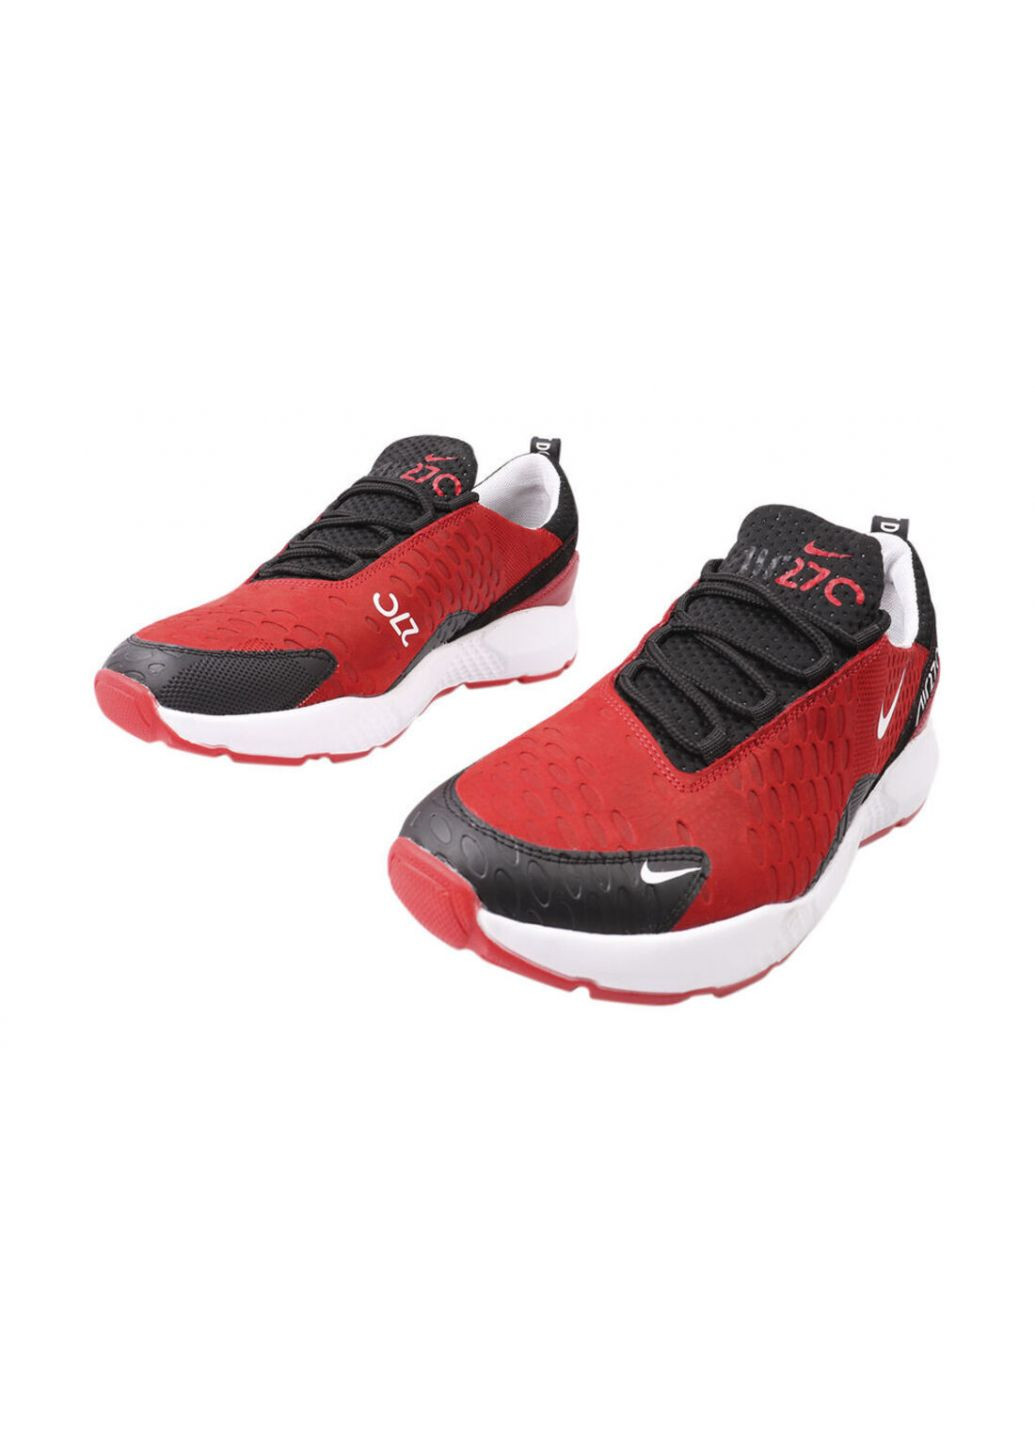 Червоні кросівки чоловічі з натуральної шкіри (нубук), на низькому ходу, на шнурівці, колір червоний, MDK 19-21DTS